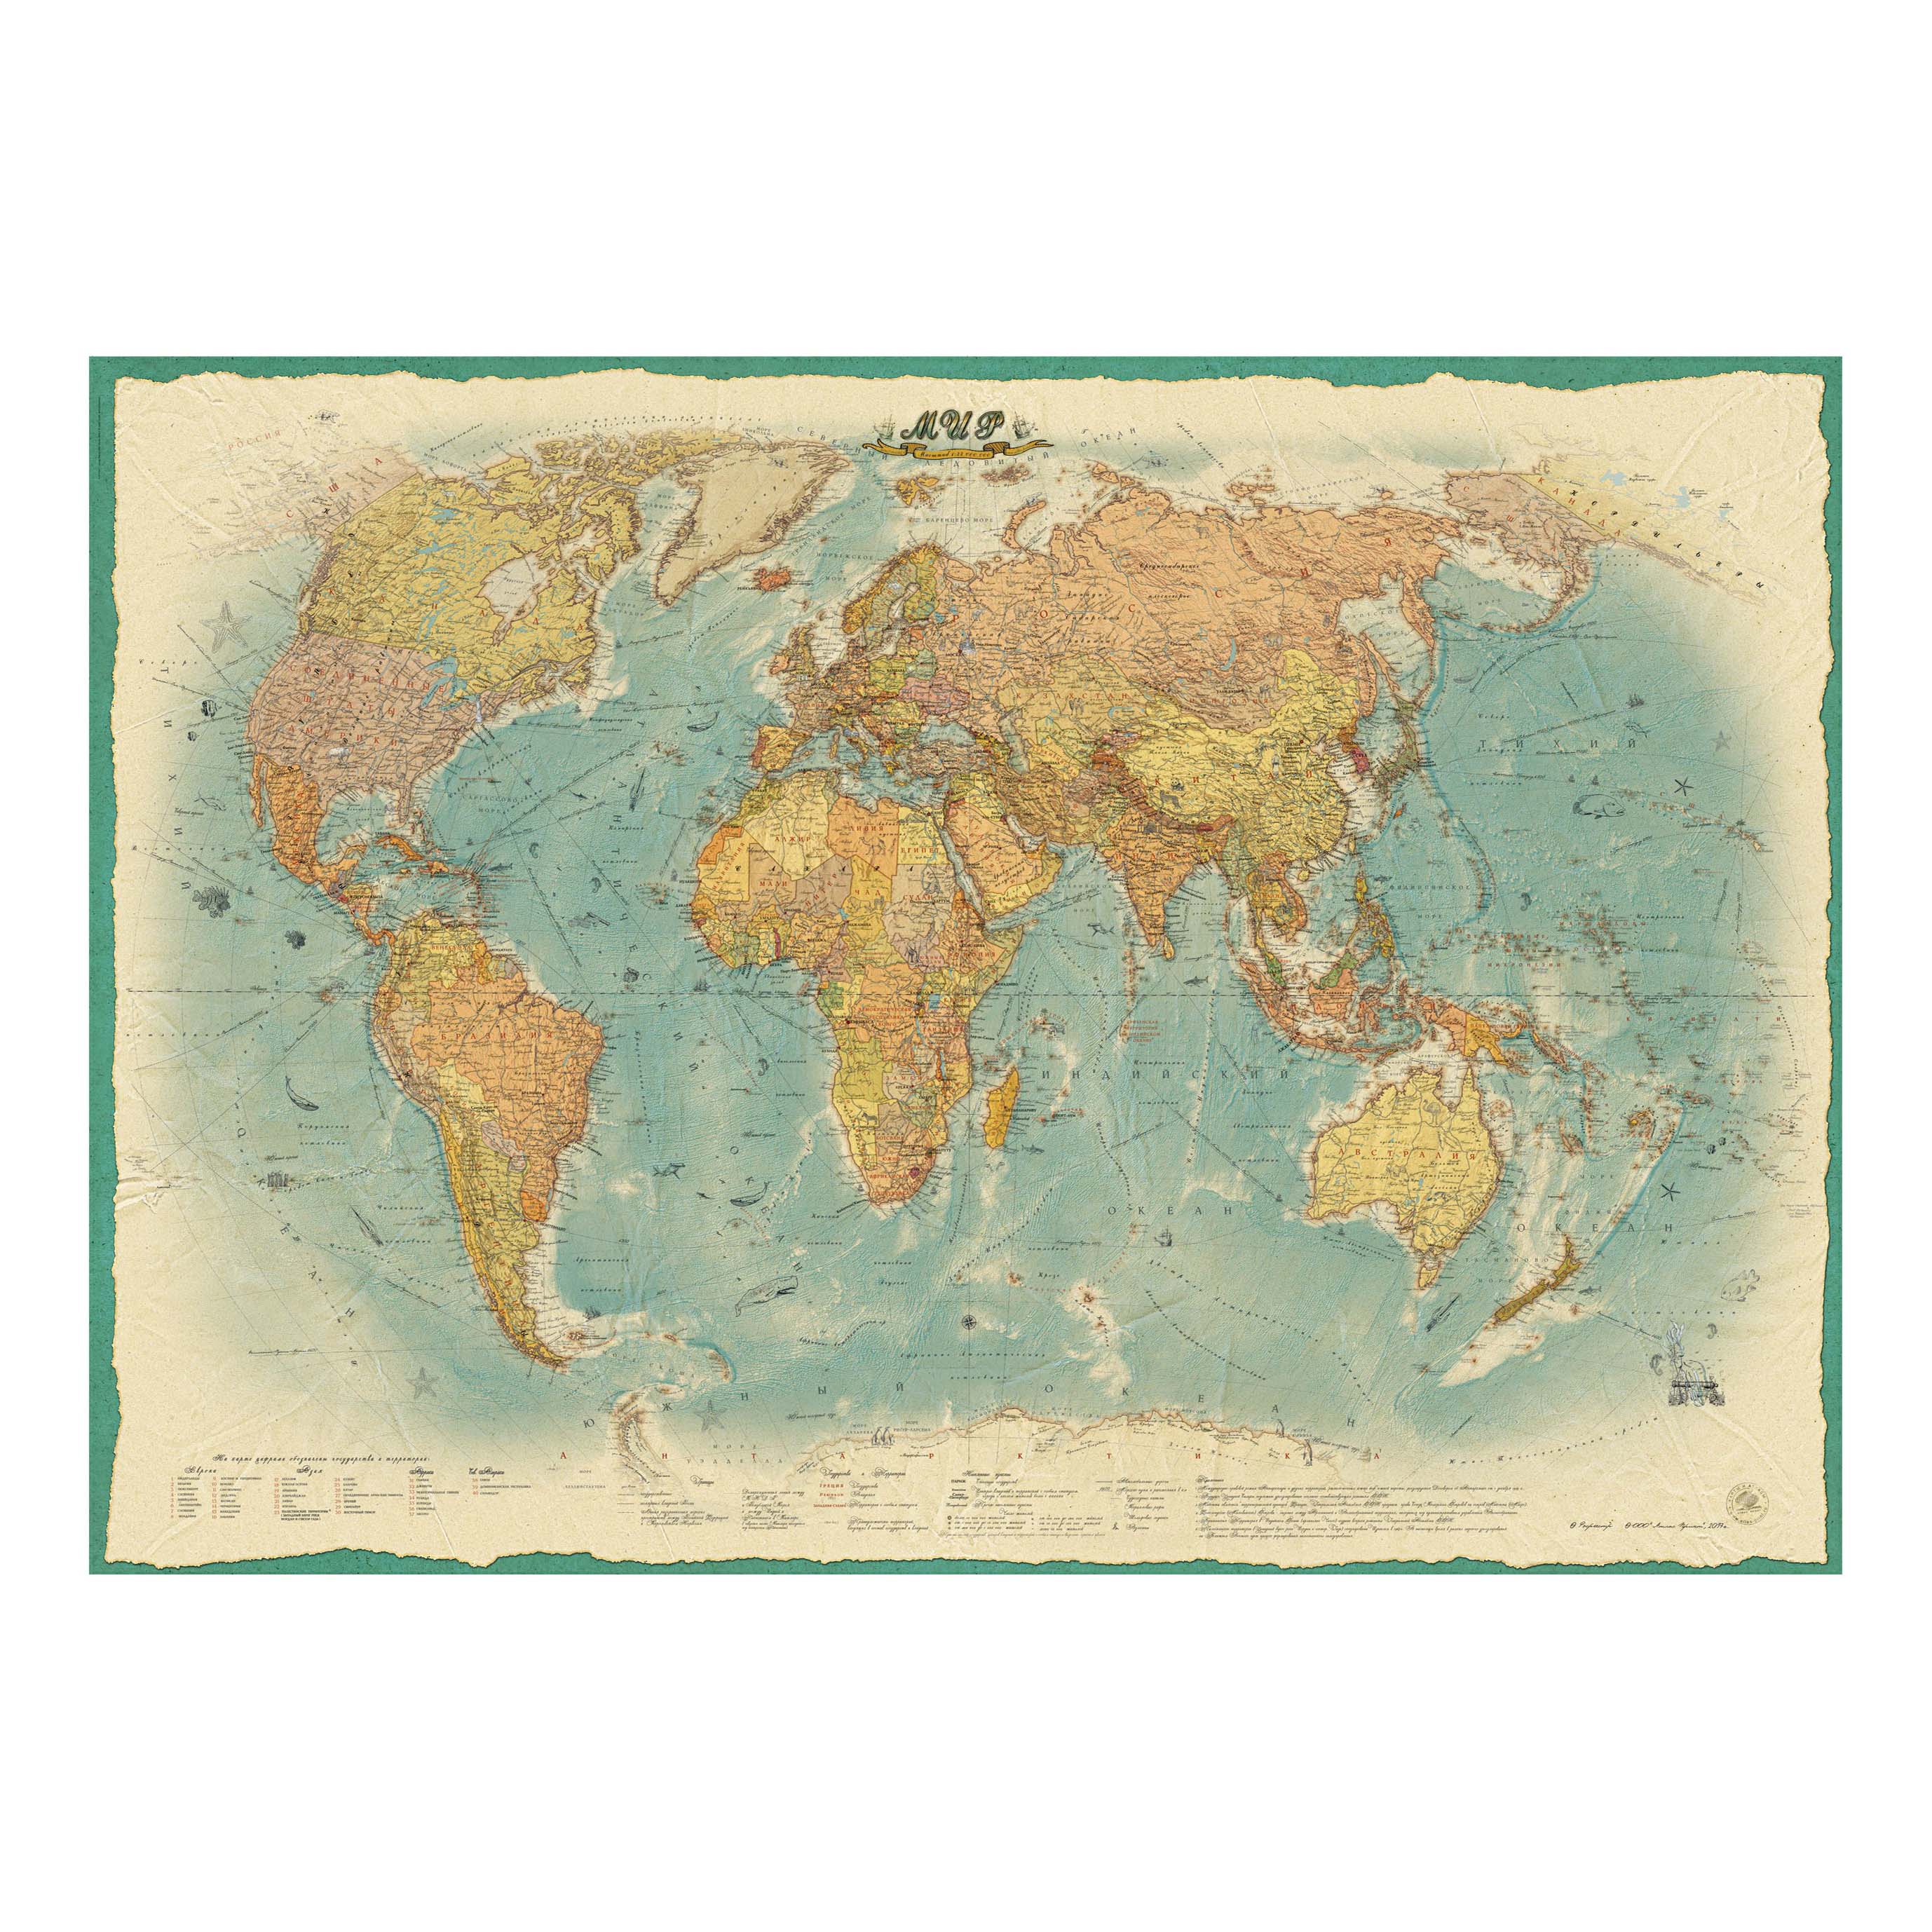 Большая мировая карта. Настенная карта атлас принт мир политическая 1:22,1,54х1,07м. Ретро стиль.